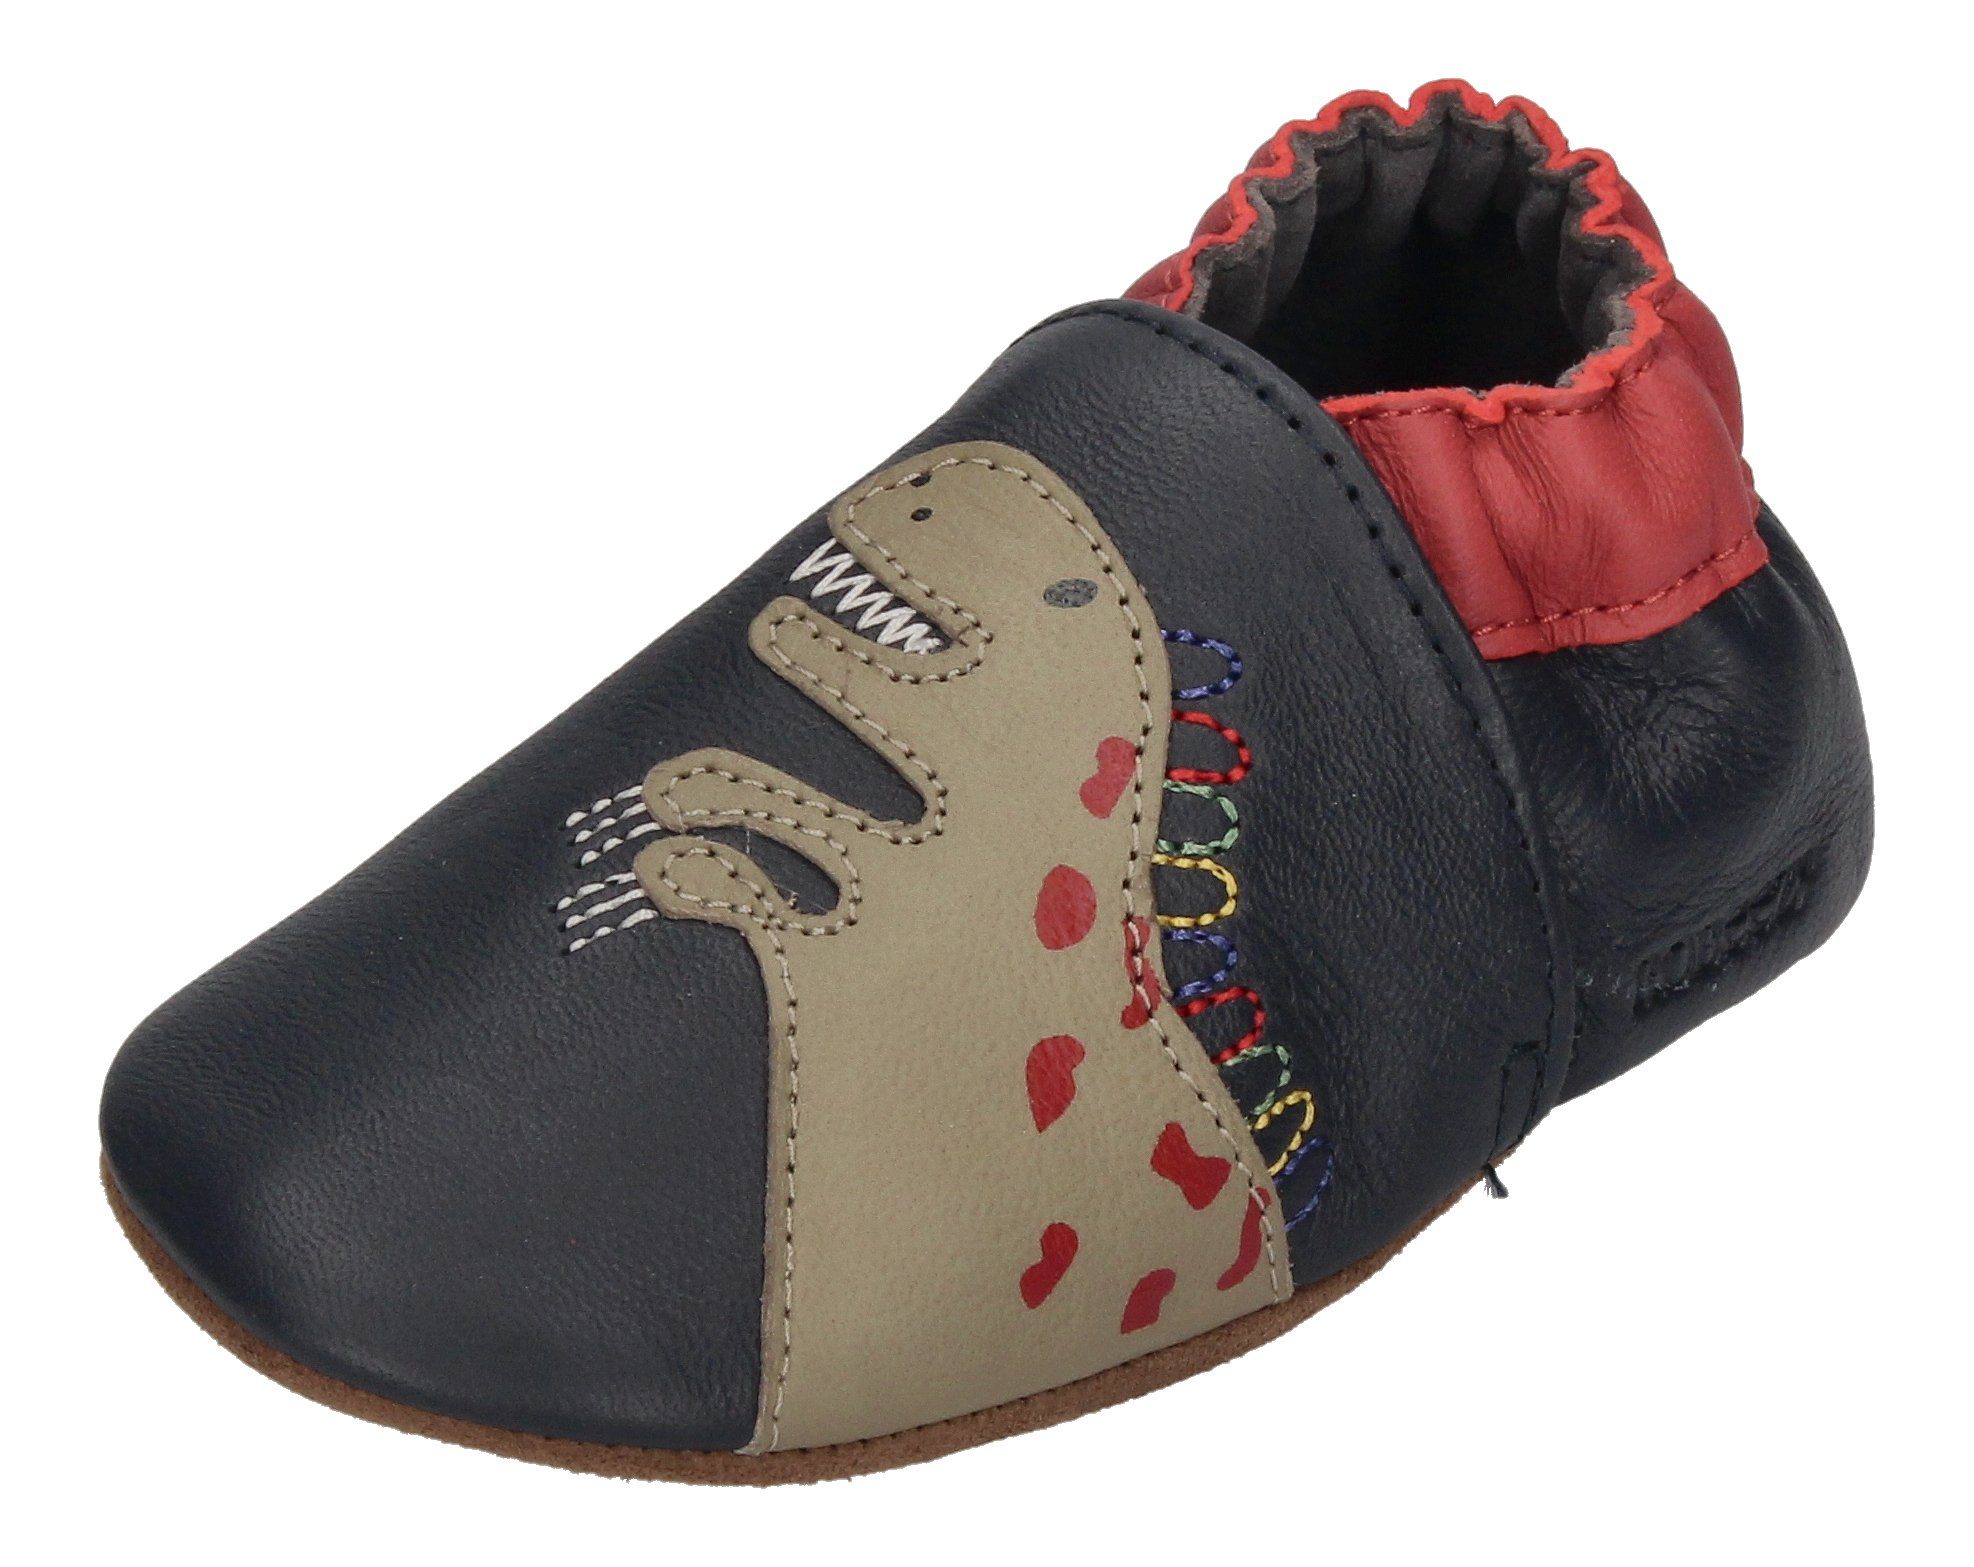 Schuhe Gr 17 online kaufen | OTTO